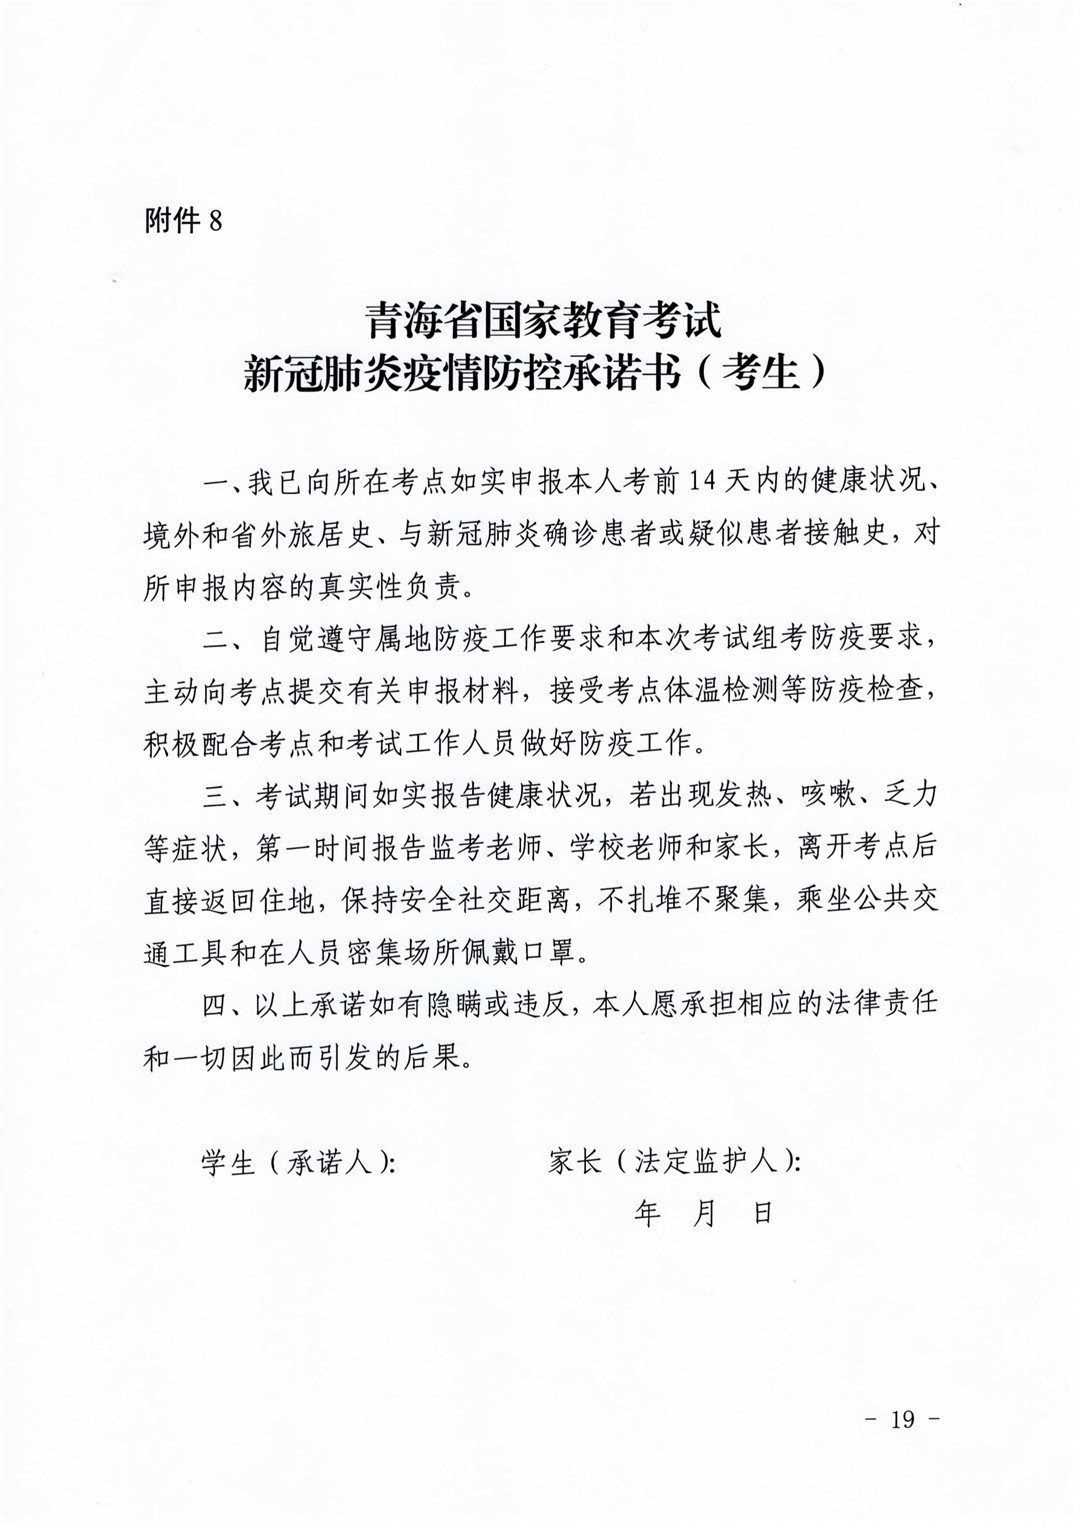 青海省高等学校招生委员会关于做好2021年普通高等学校艺术类专业考试招生工作的通知